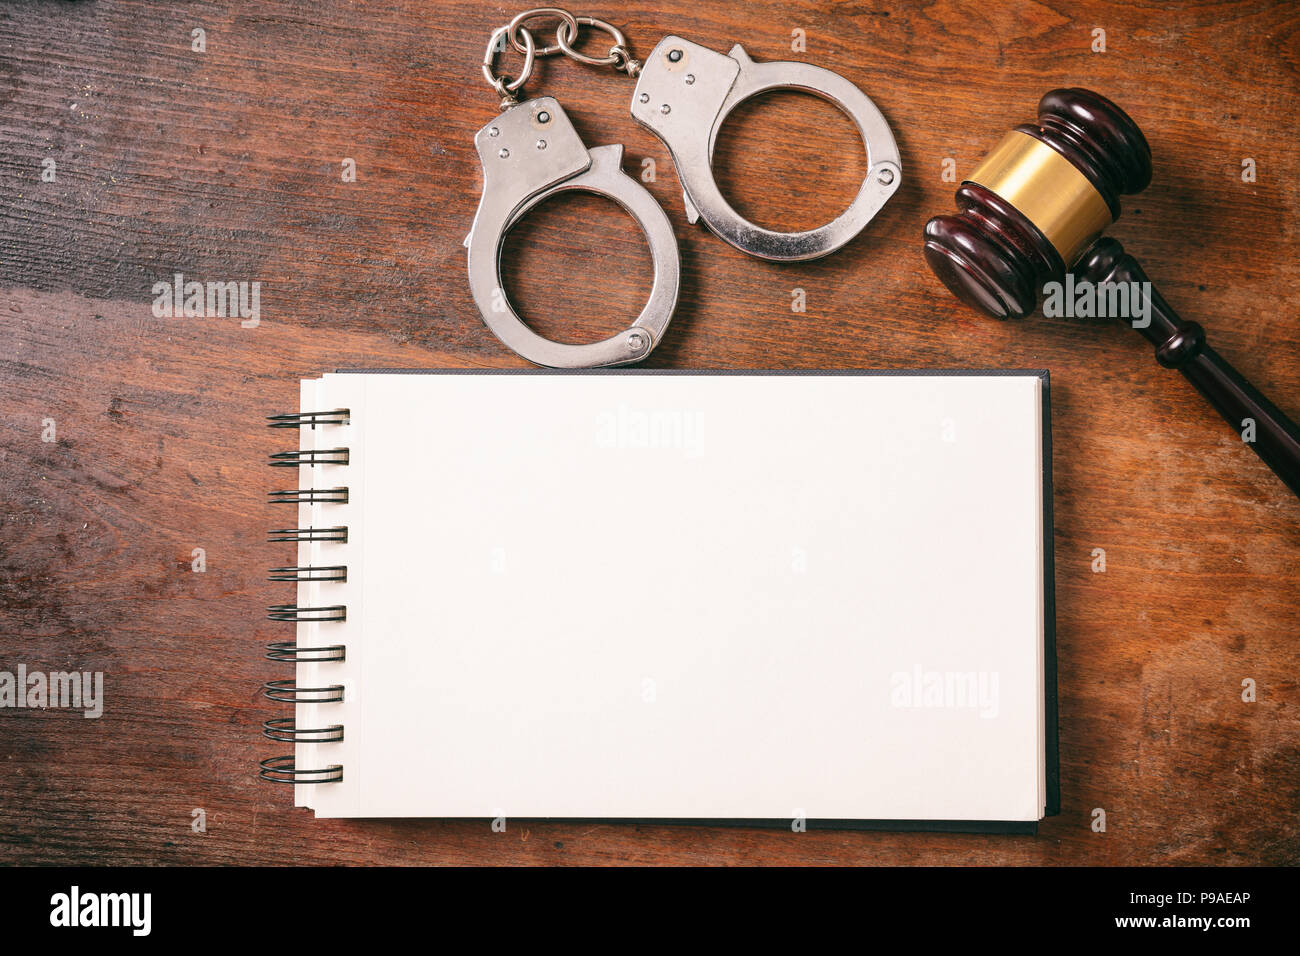 Recht und Ordnung Konzept. Handschellen, Hammer und ein Notebook auf einem hölzernen Hintergrund mit kopieren. Stockfoto